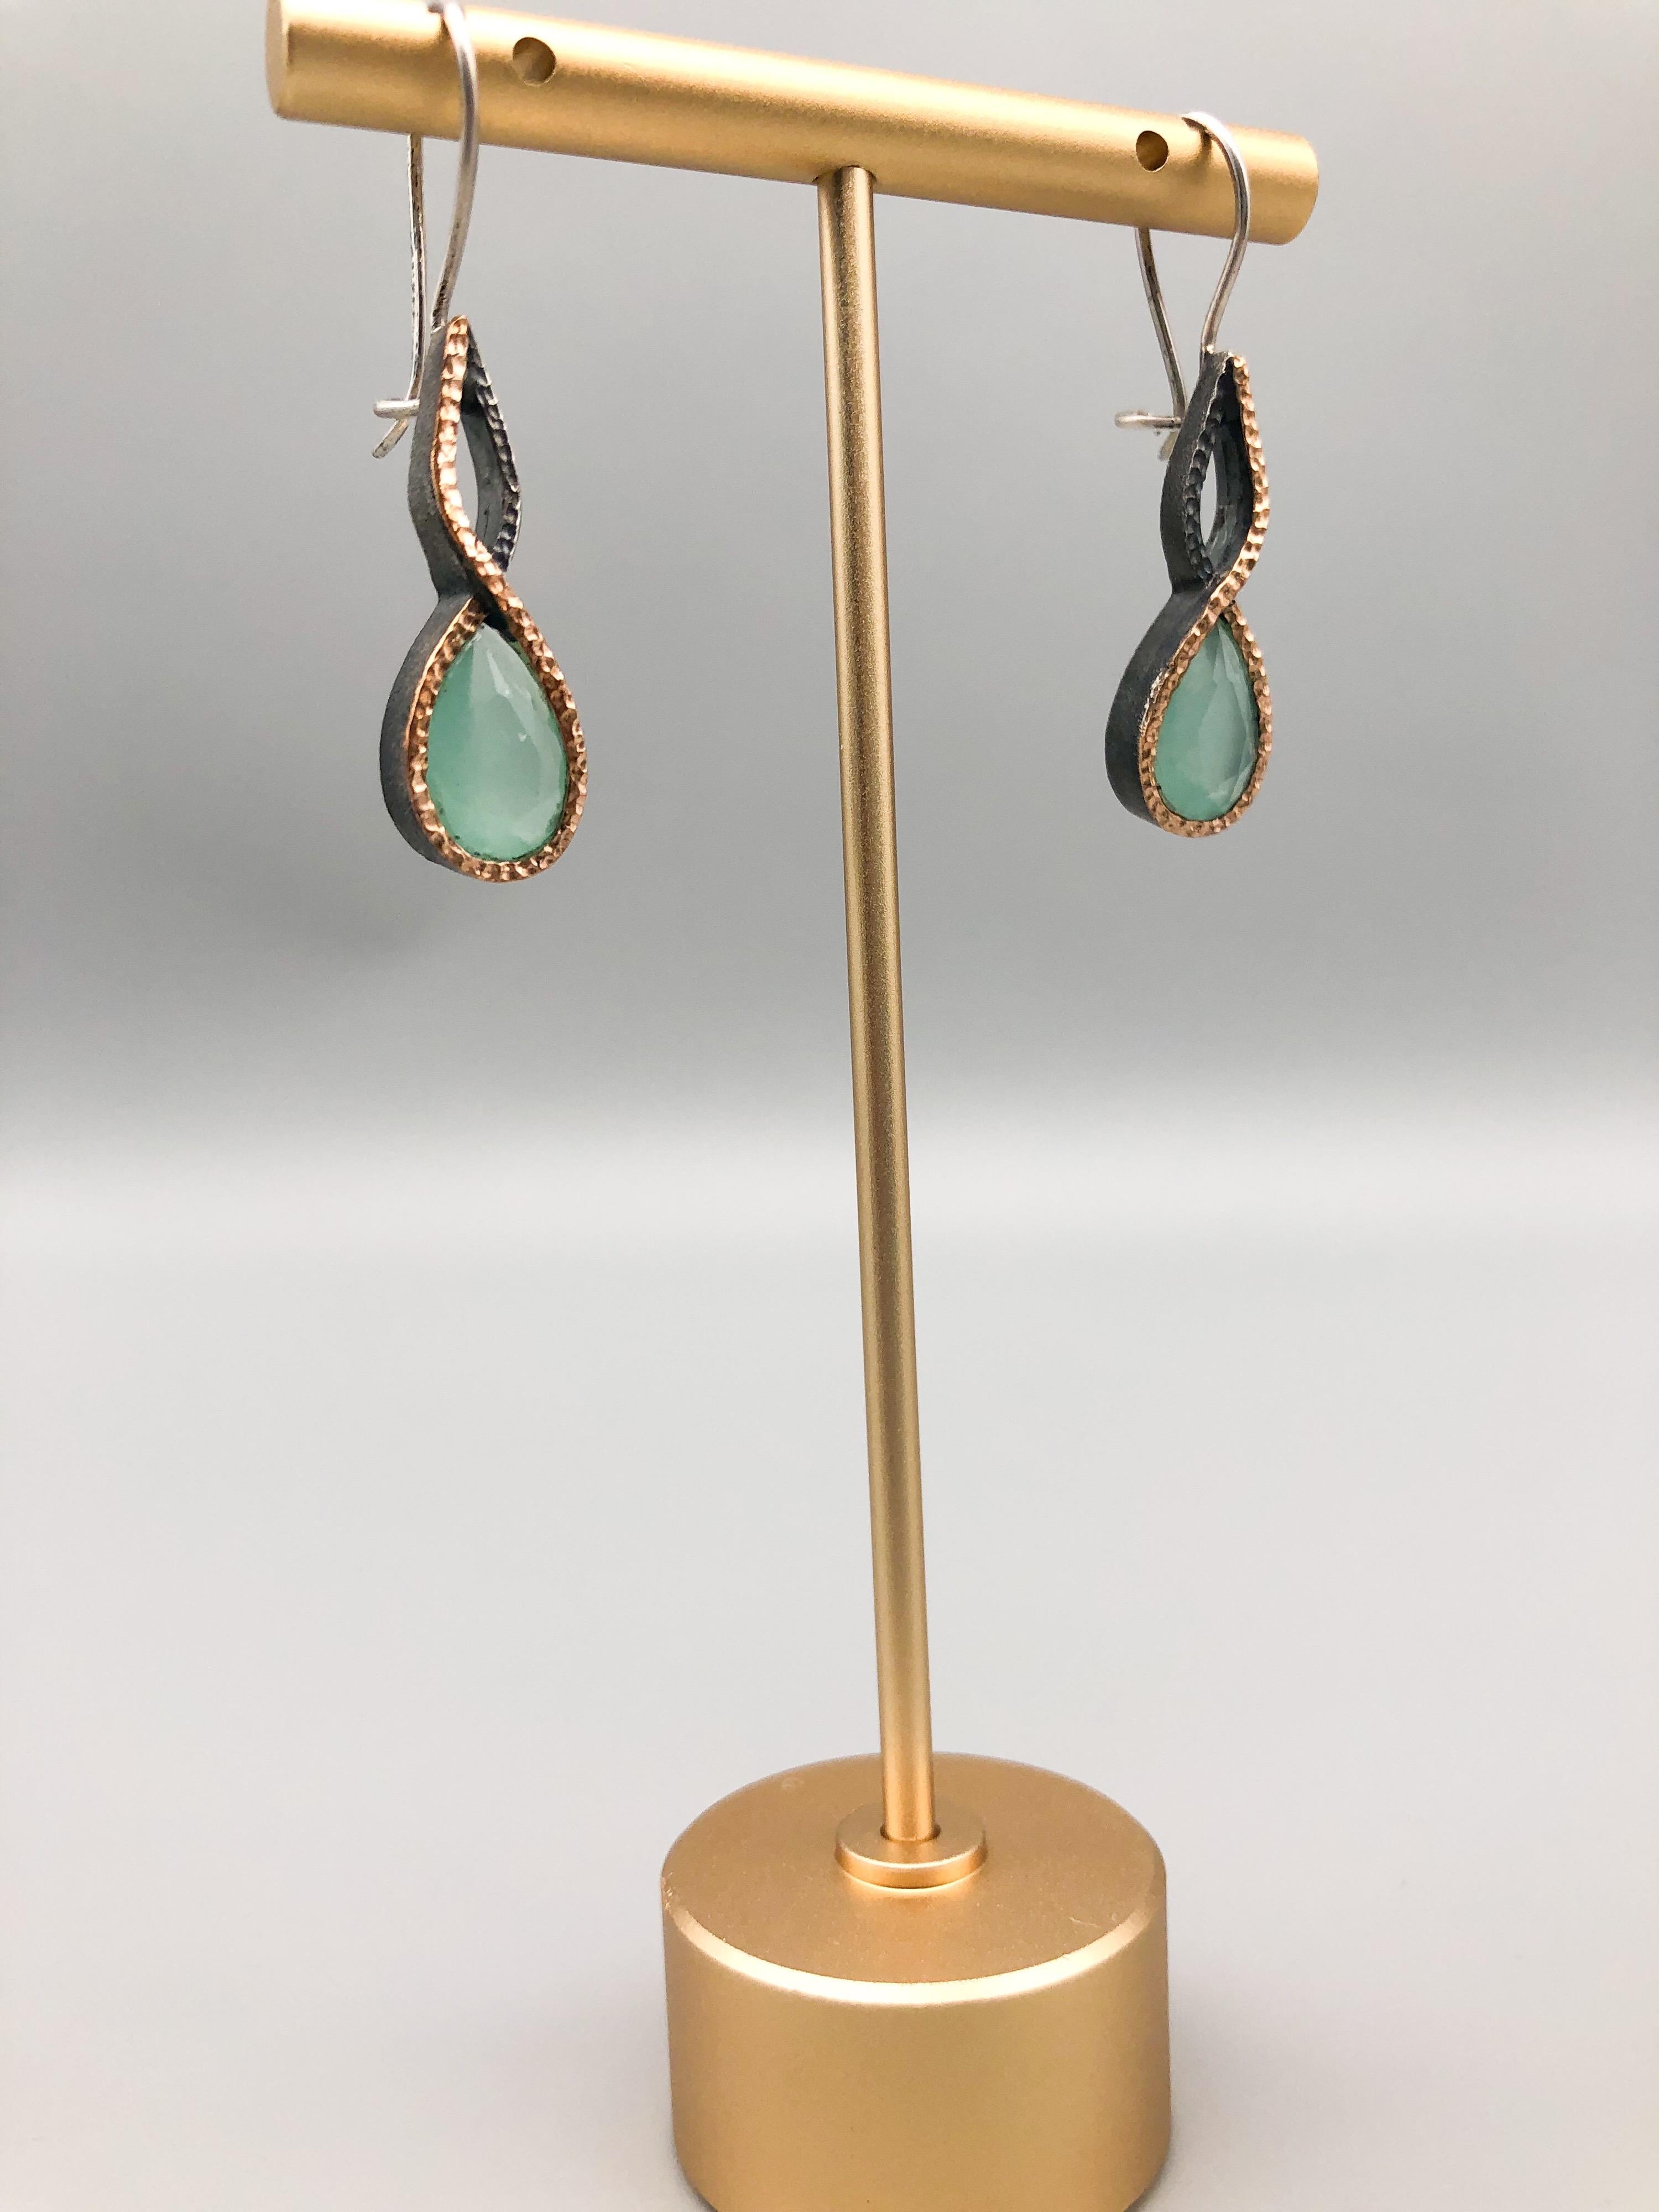 A.Jeschel Aquamarine twisted drop earrings For Sale 2